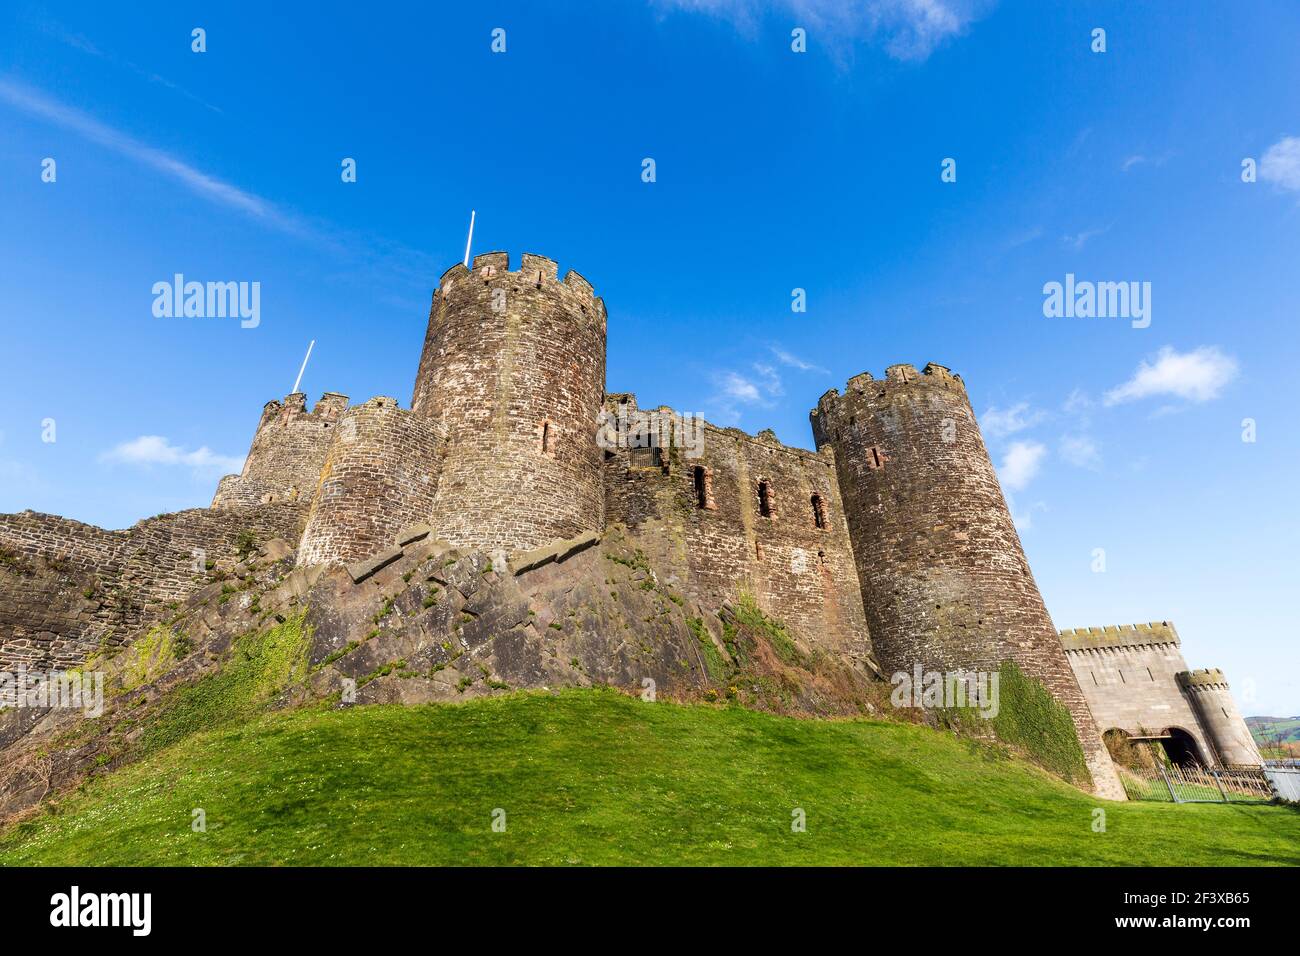 Le mur fortifié médiéval du château de Conwy, au pays de Galles Banque D'Images